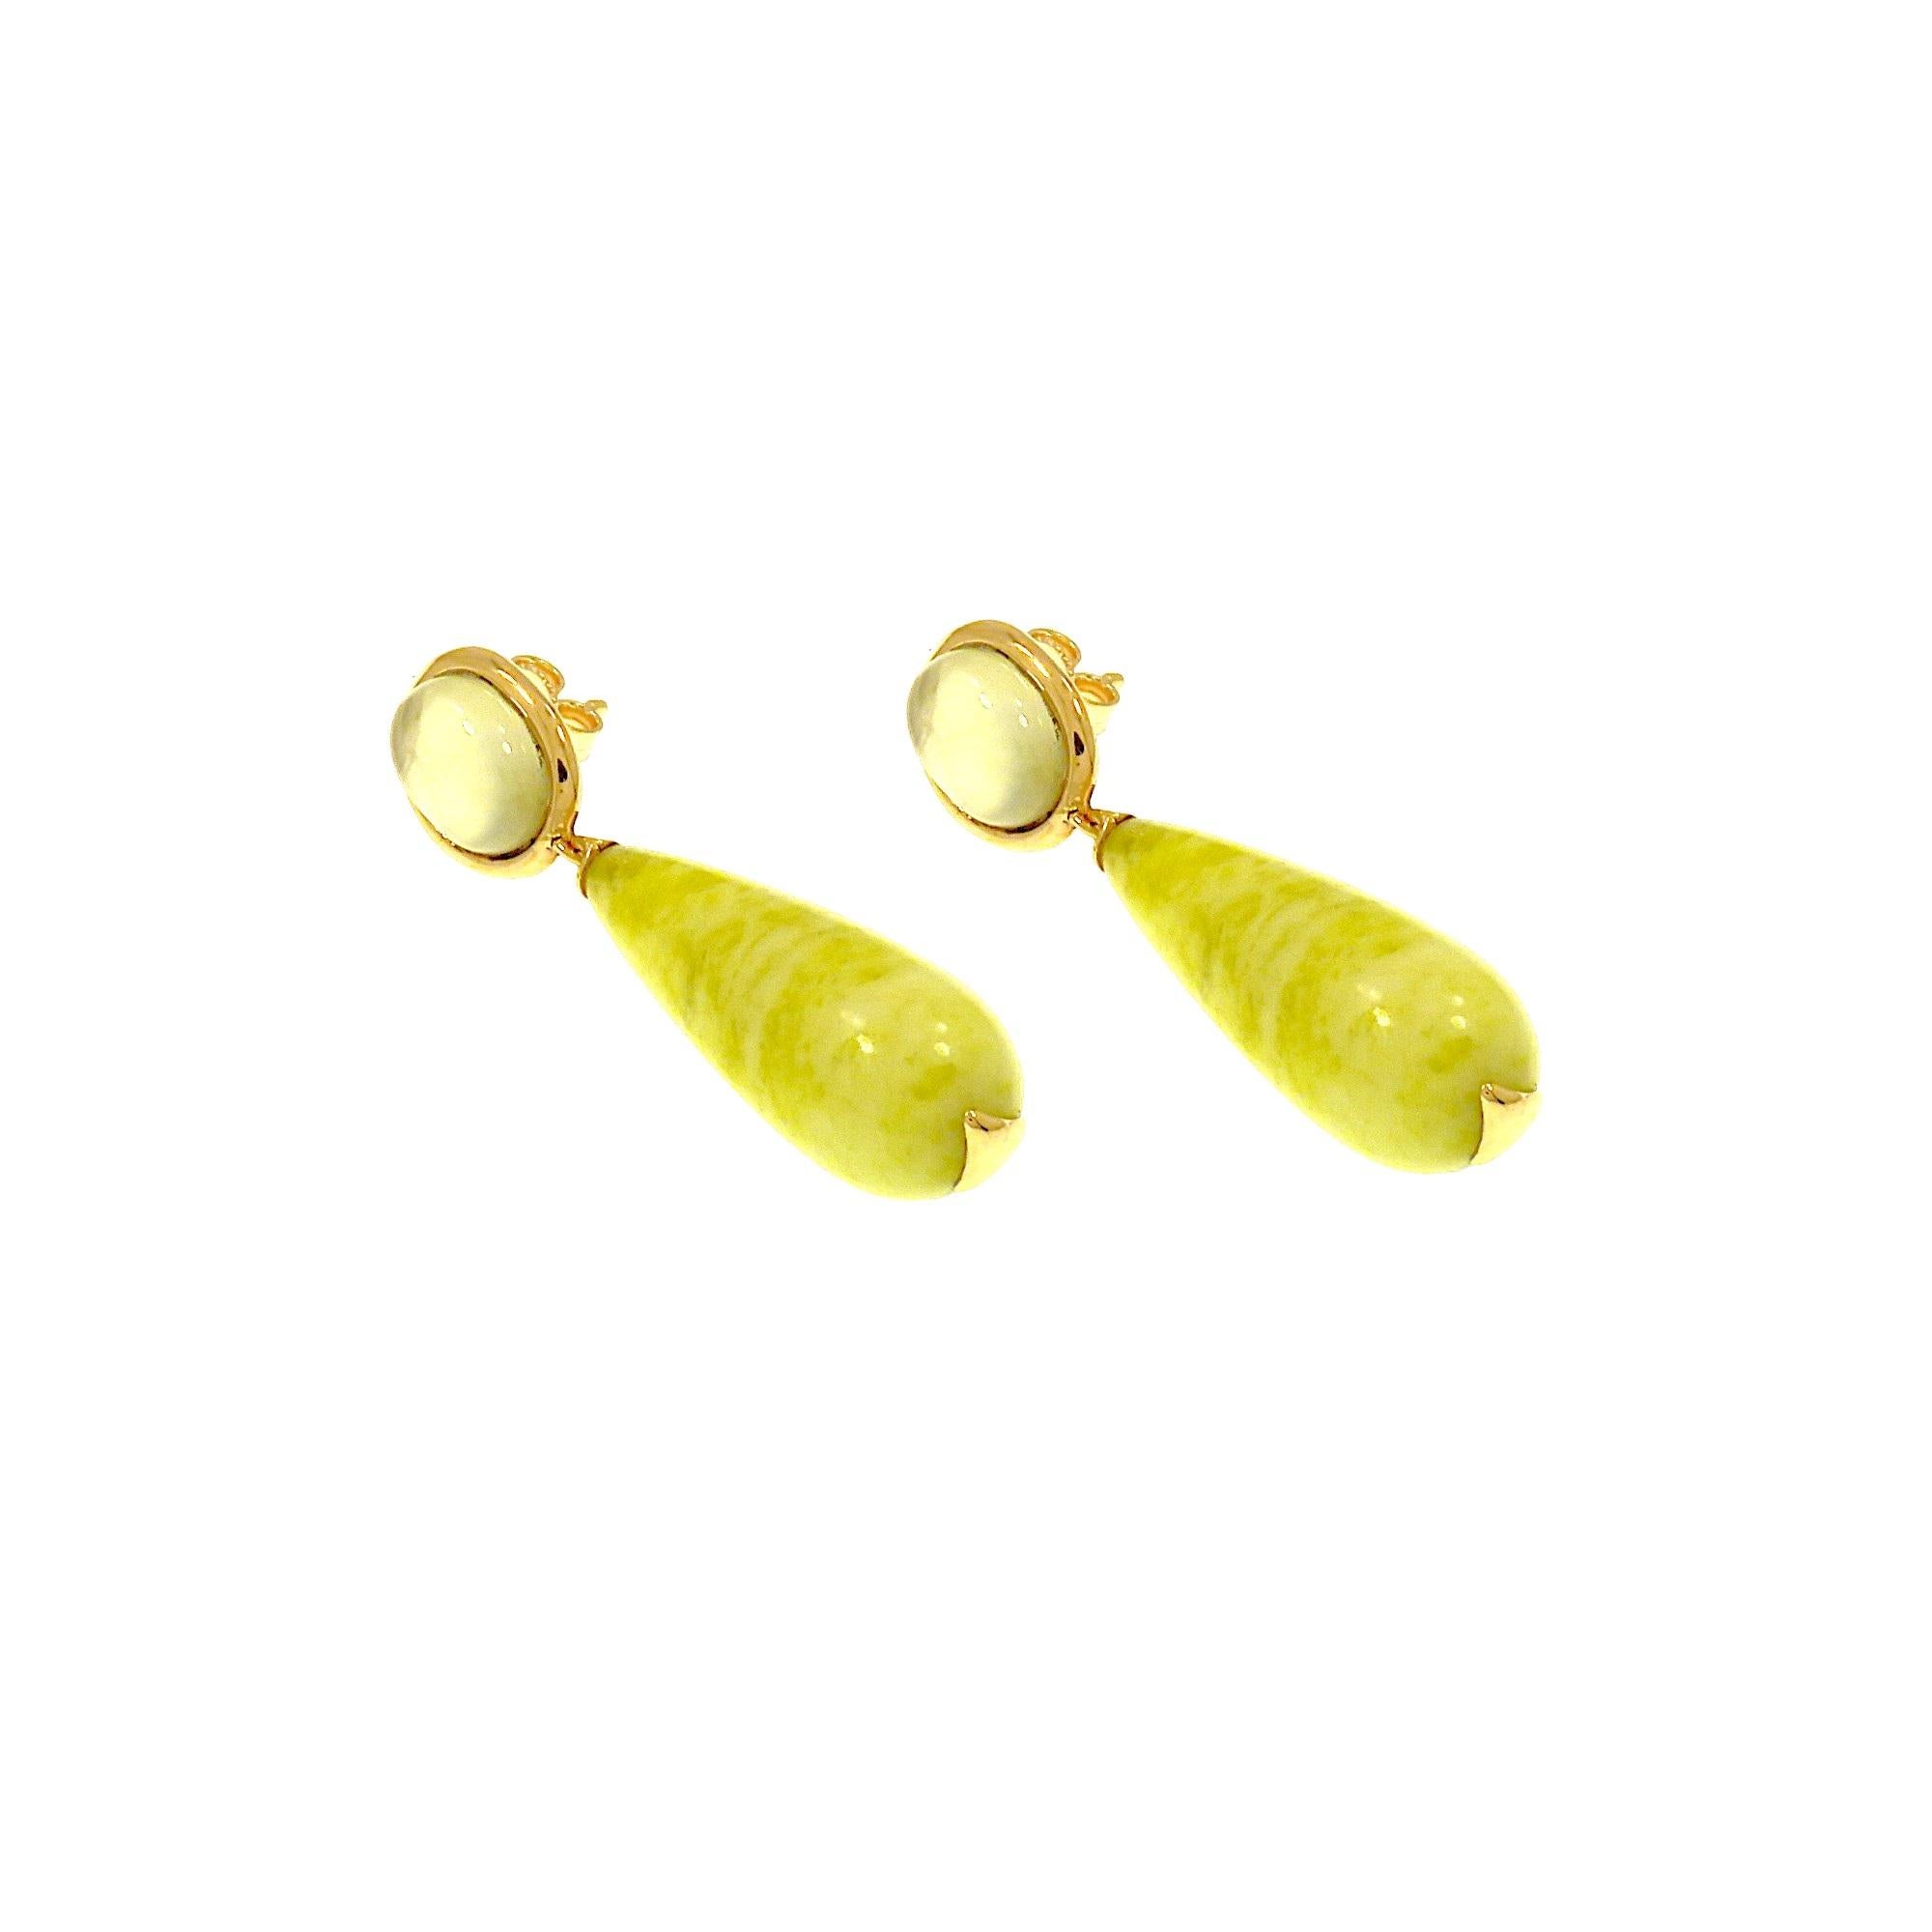 Boucle d'oreille pendante élégante et classique avec un cabochon ovale de prehnite en or rose 9k avec une épingle et une attache papillon d'où pend une goutte d'agate jaune. Les dimensions de la préhnite sont de 10x8 mm / 0.39x0.31 pouces de la